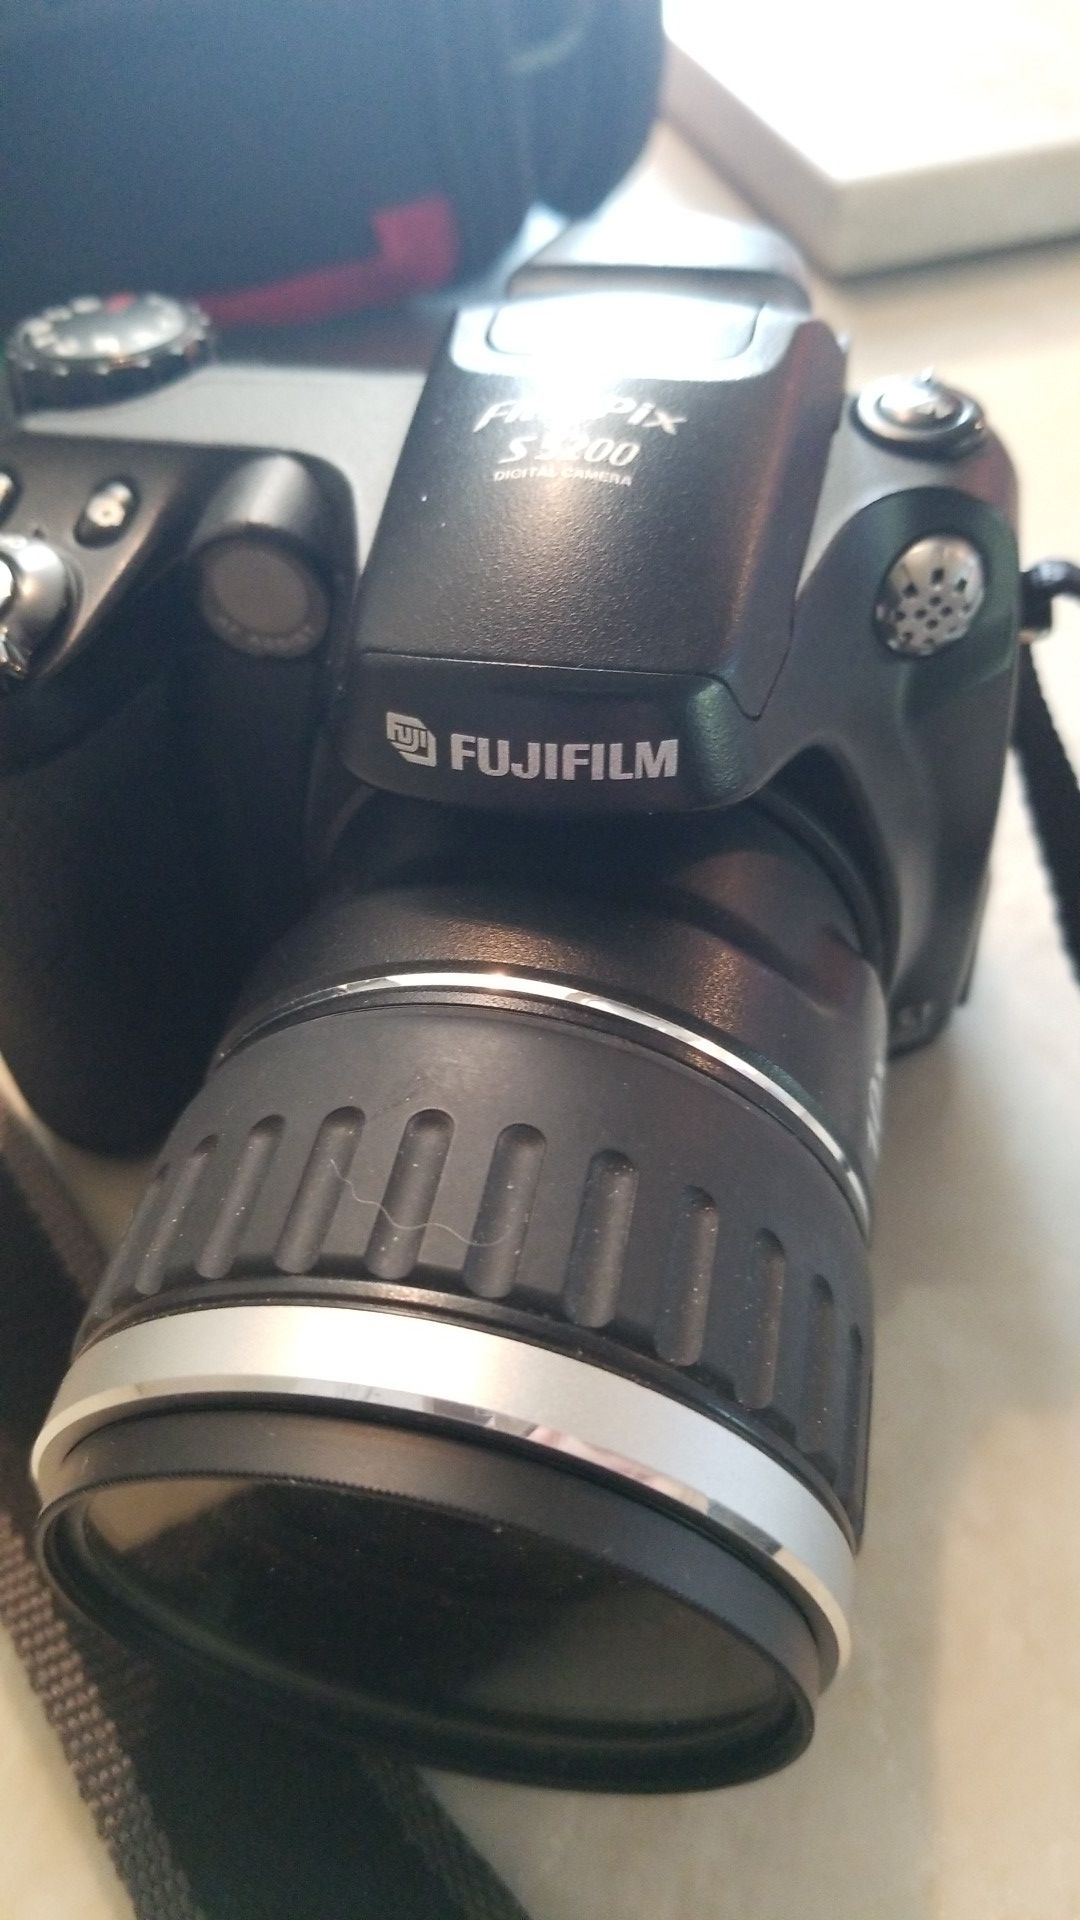 Fujifilm FinePix s5200